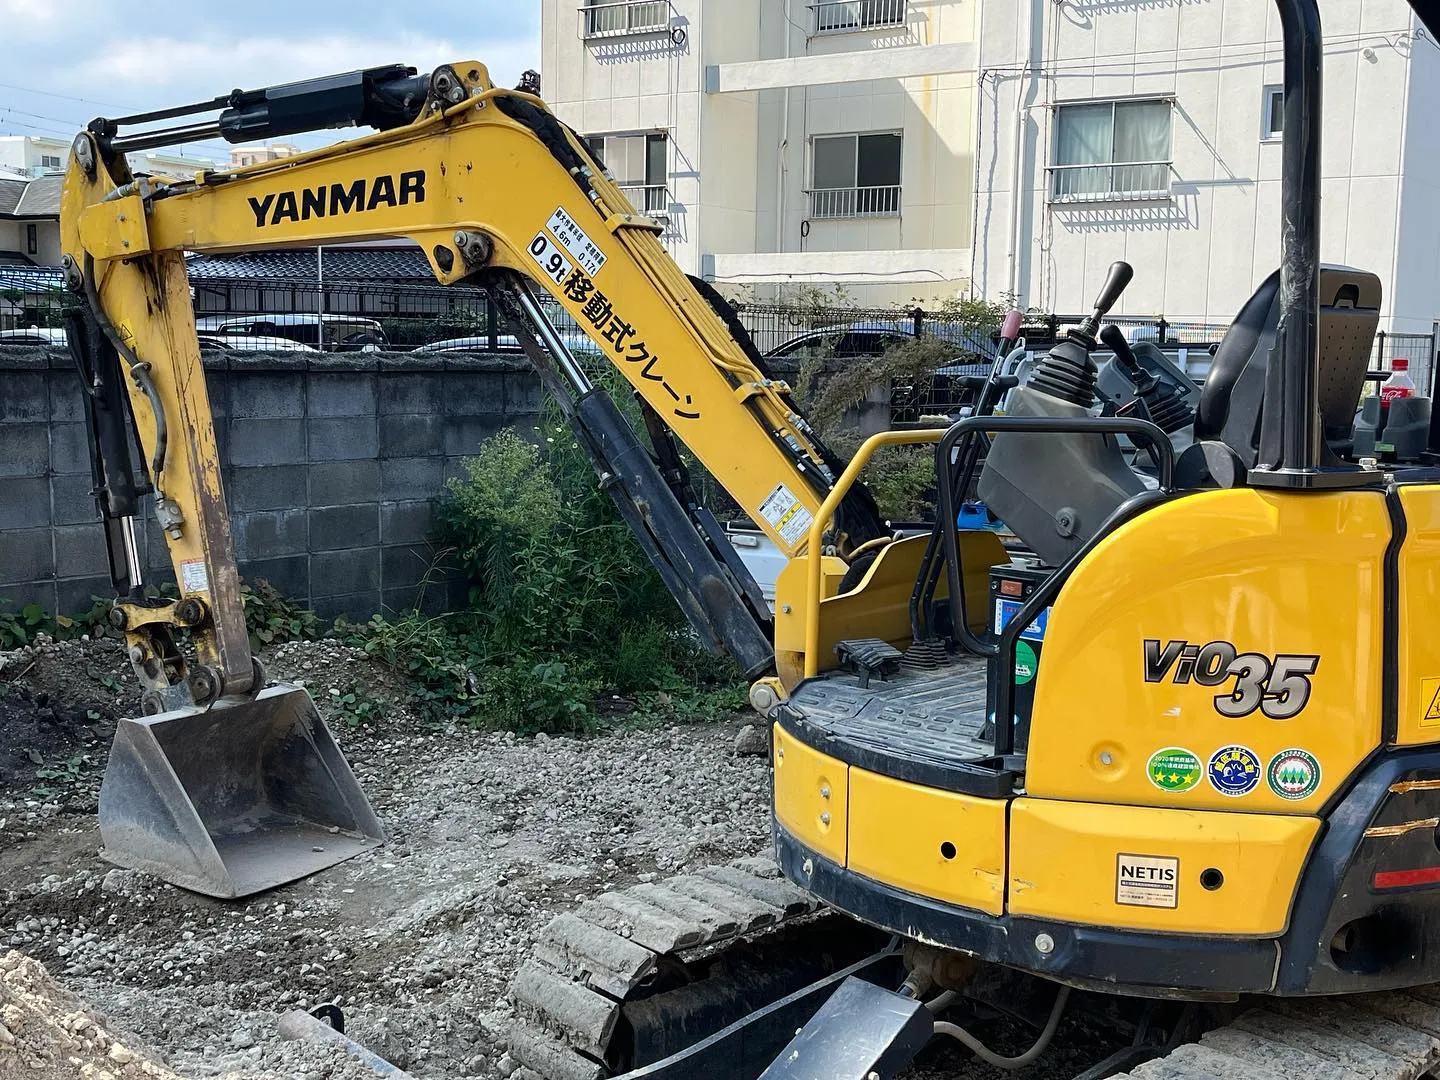 ヤンマー小型建設機械Vio35-6特定自主検査@福岡市城南区